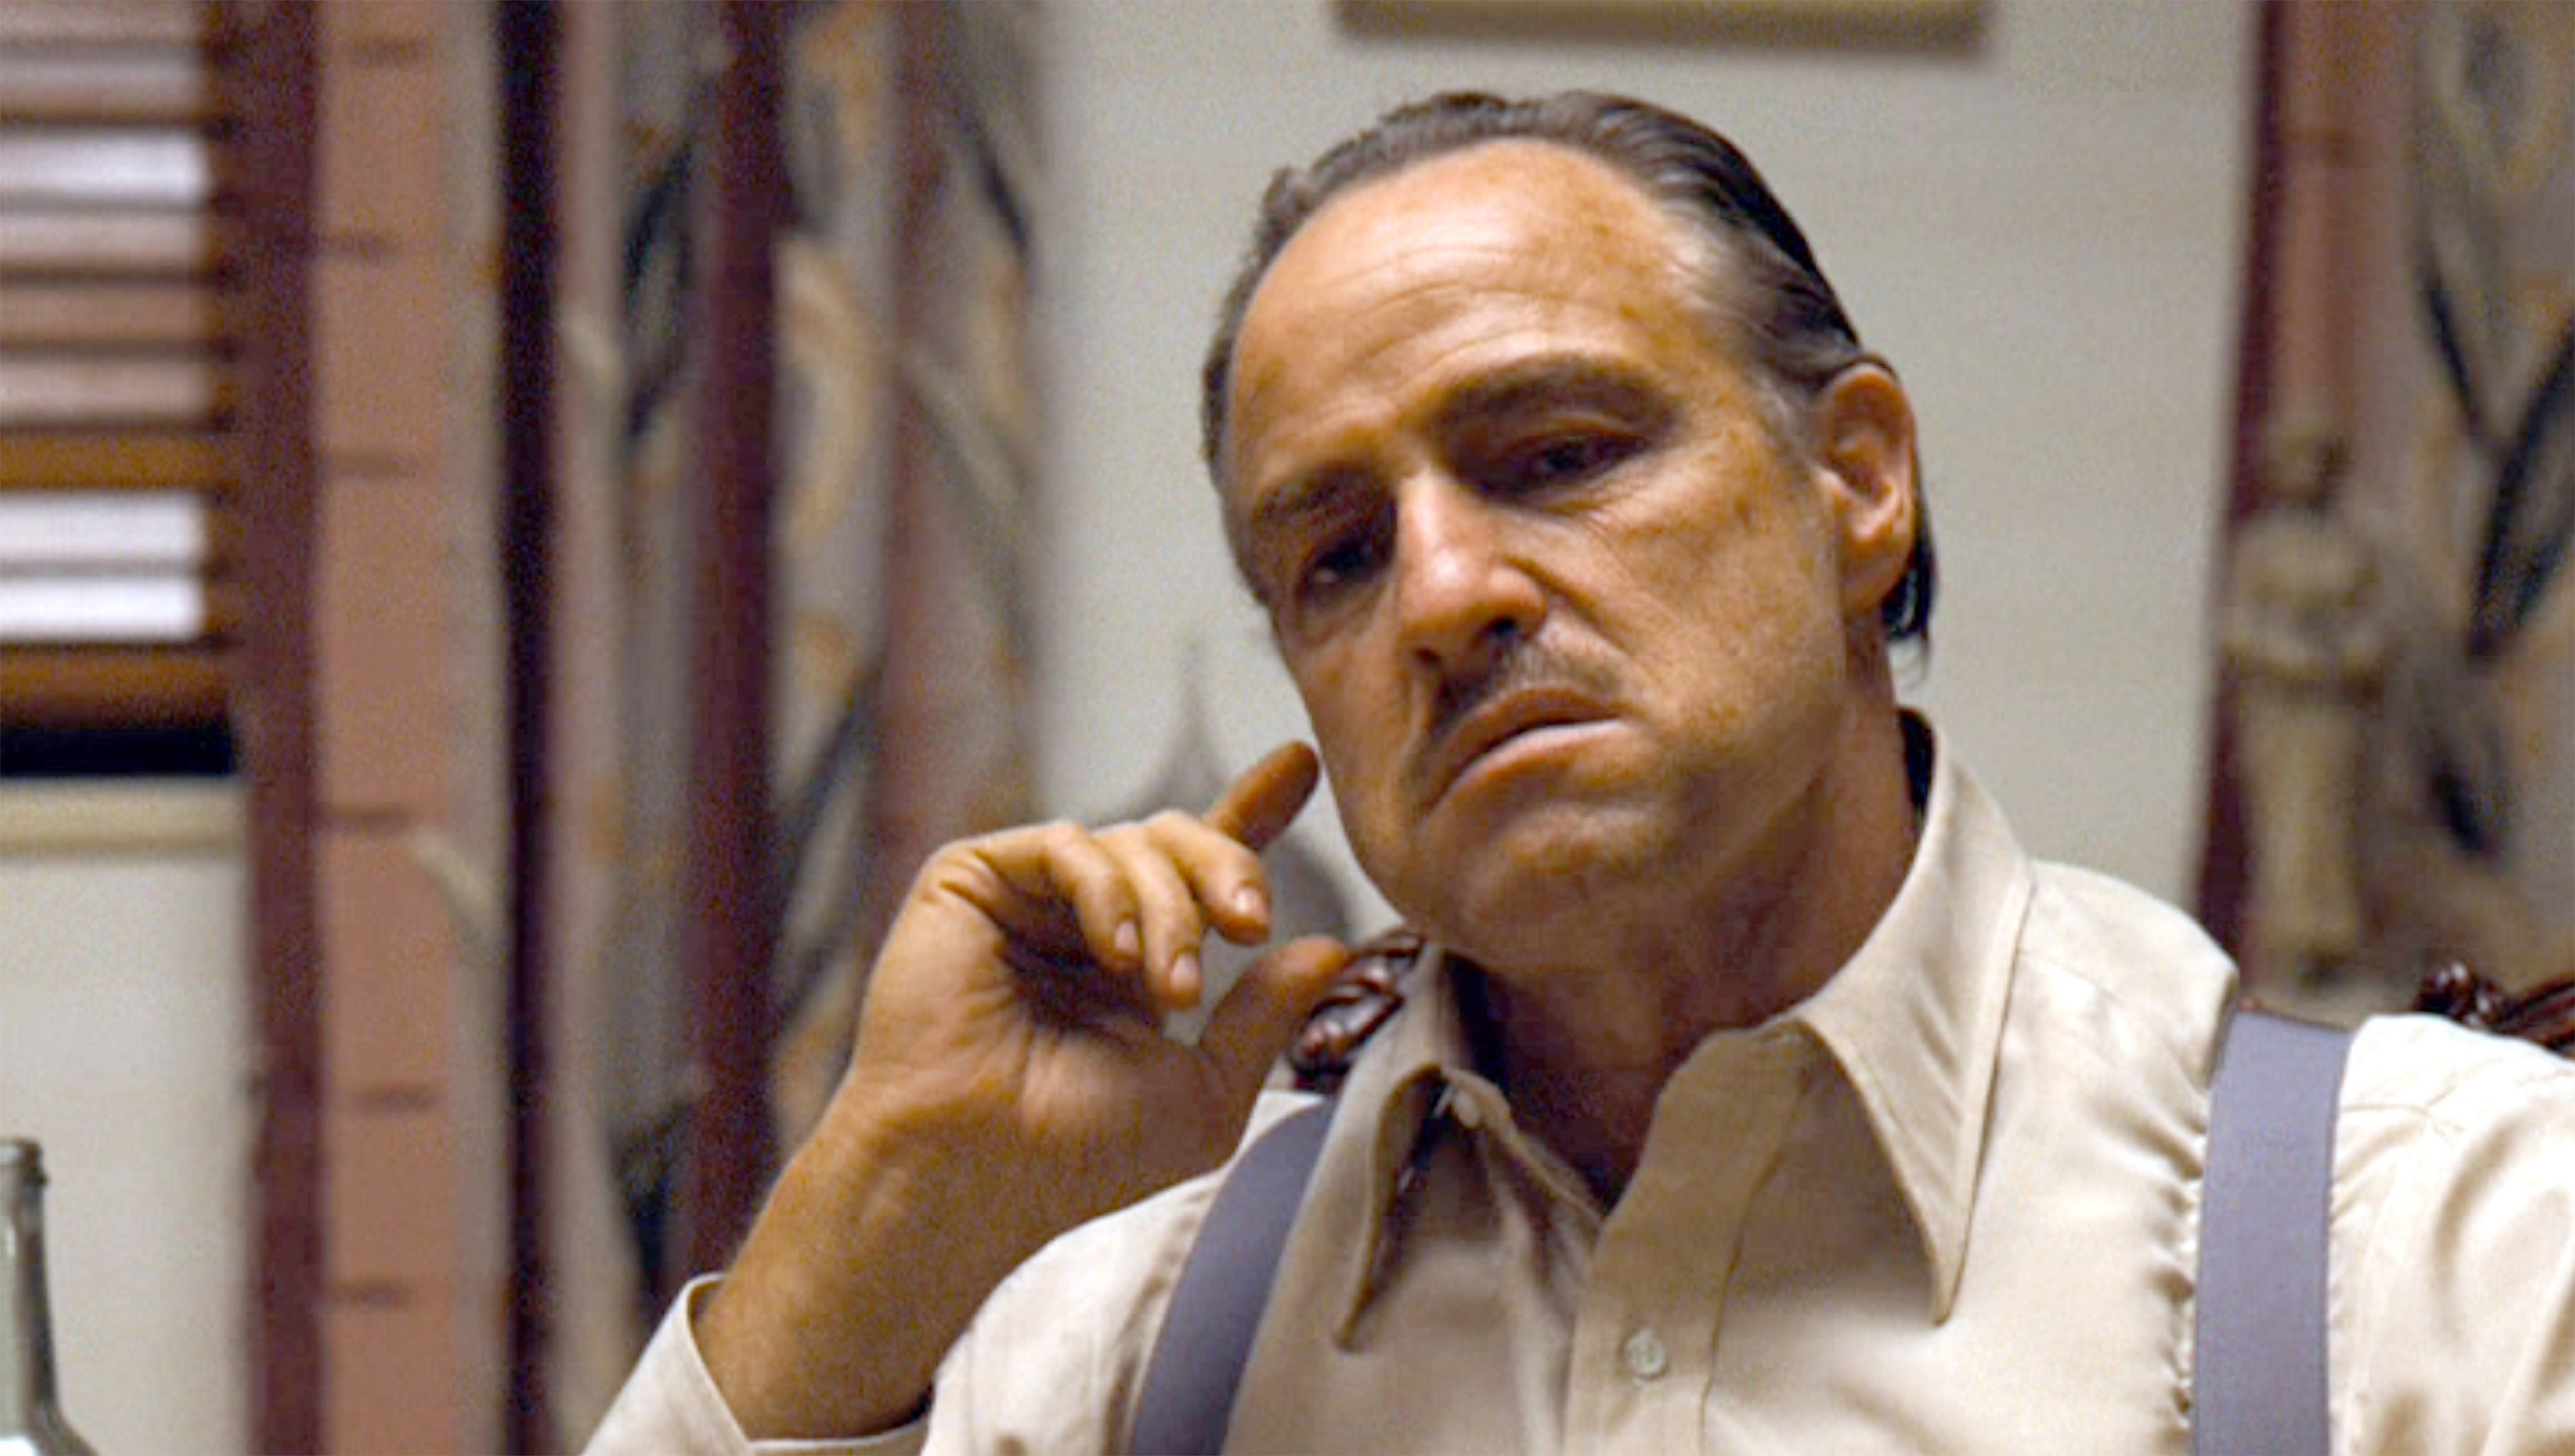 Marlon Brando plays Vito Corleone in The Godfather. 